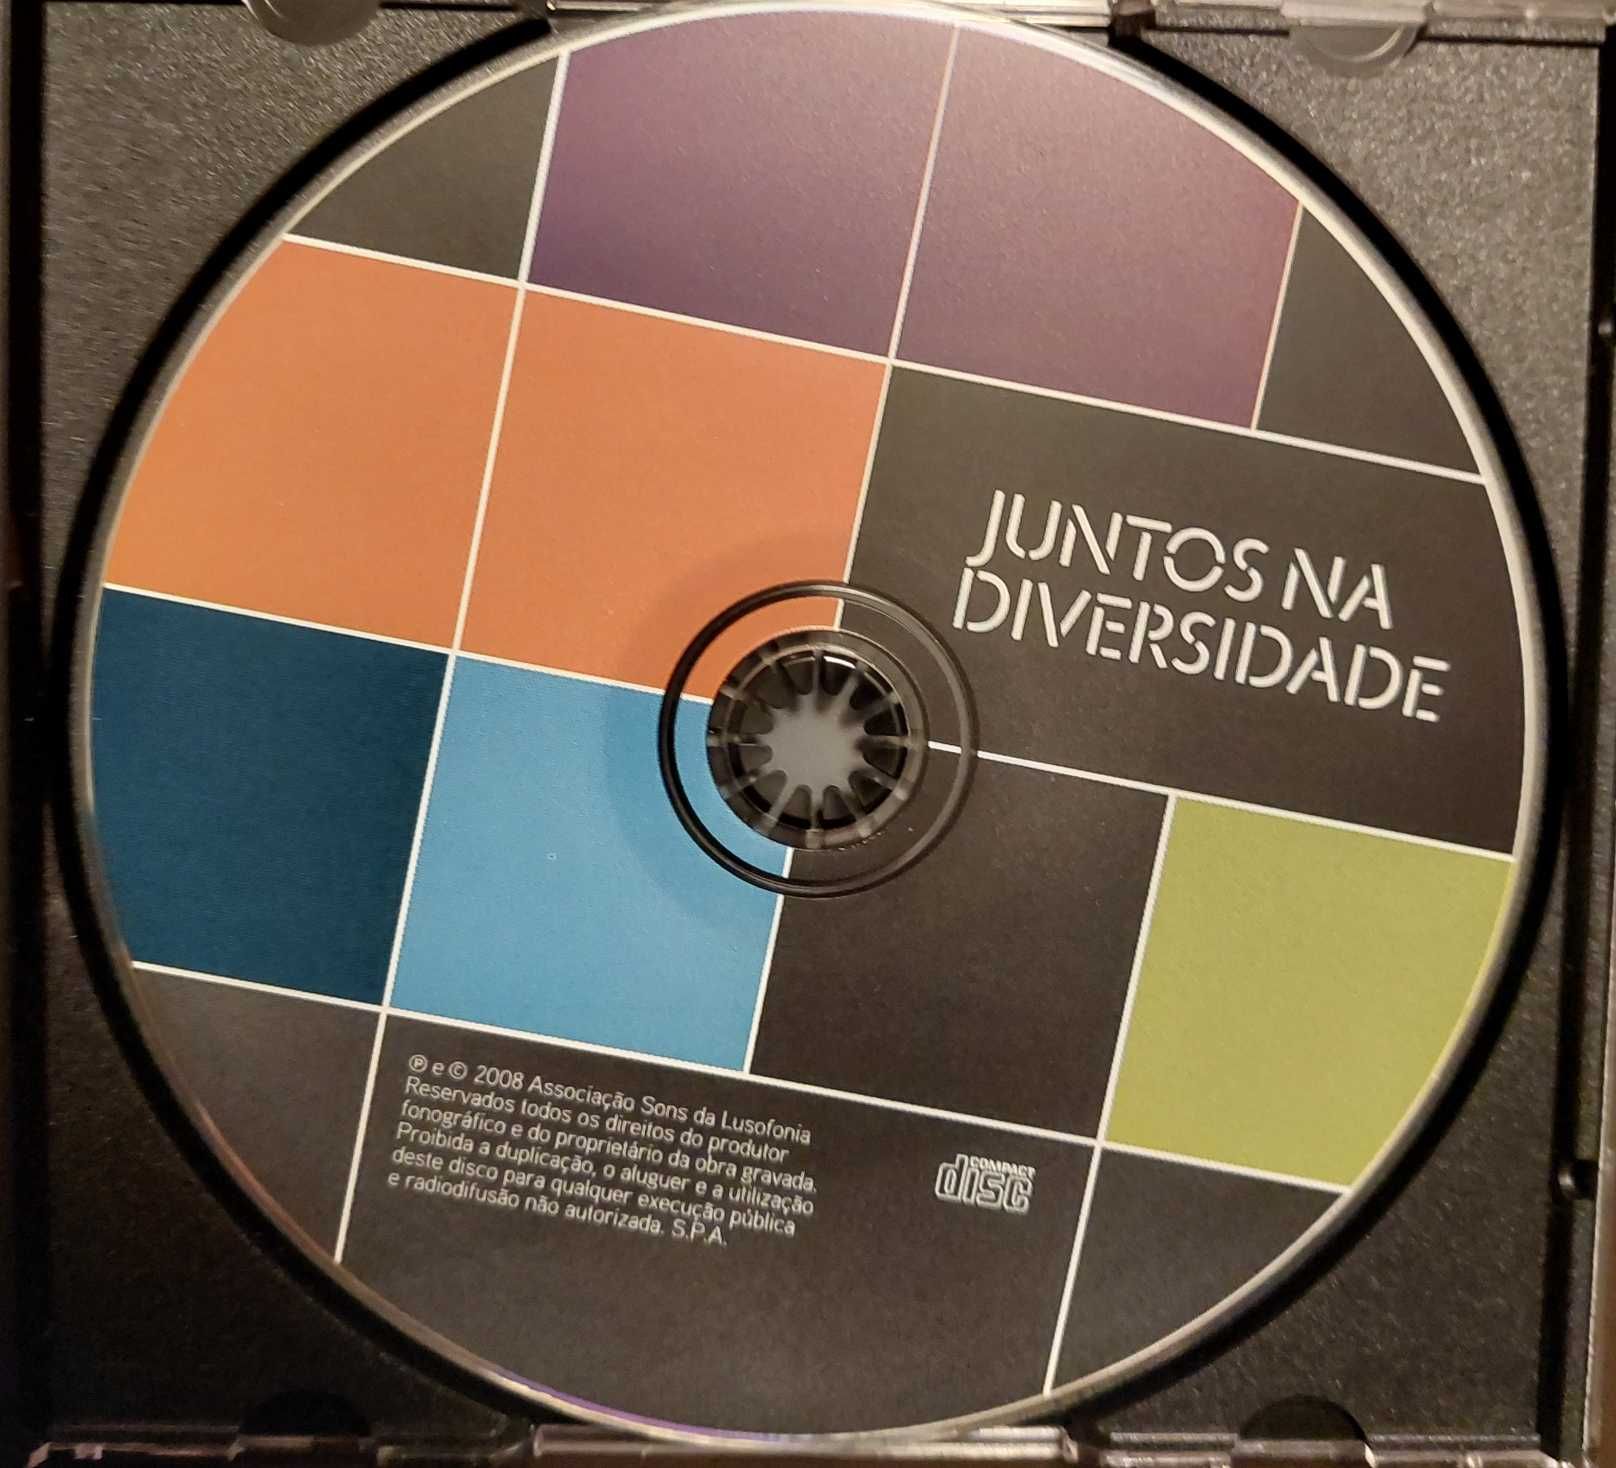 Juntos na diversidade - Sons da Lusofonia (CD)